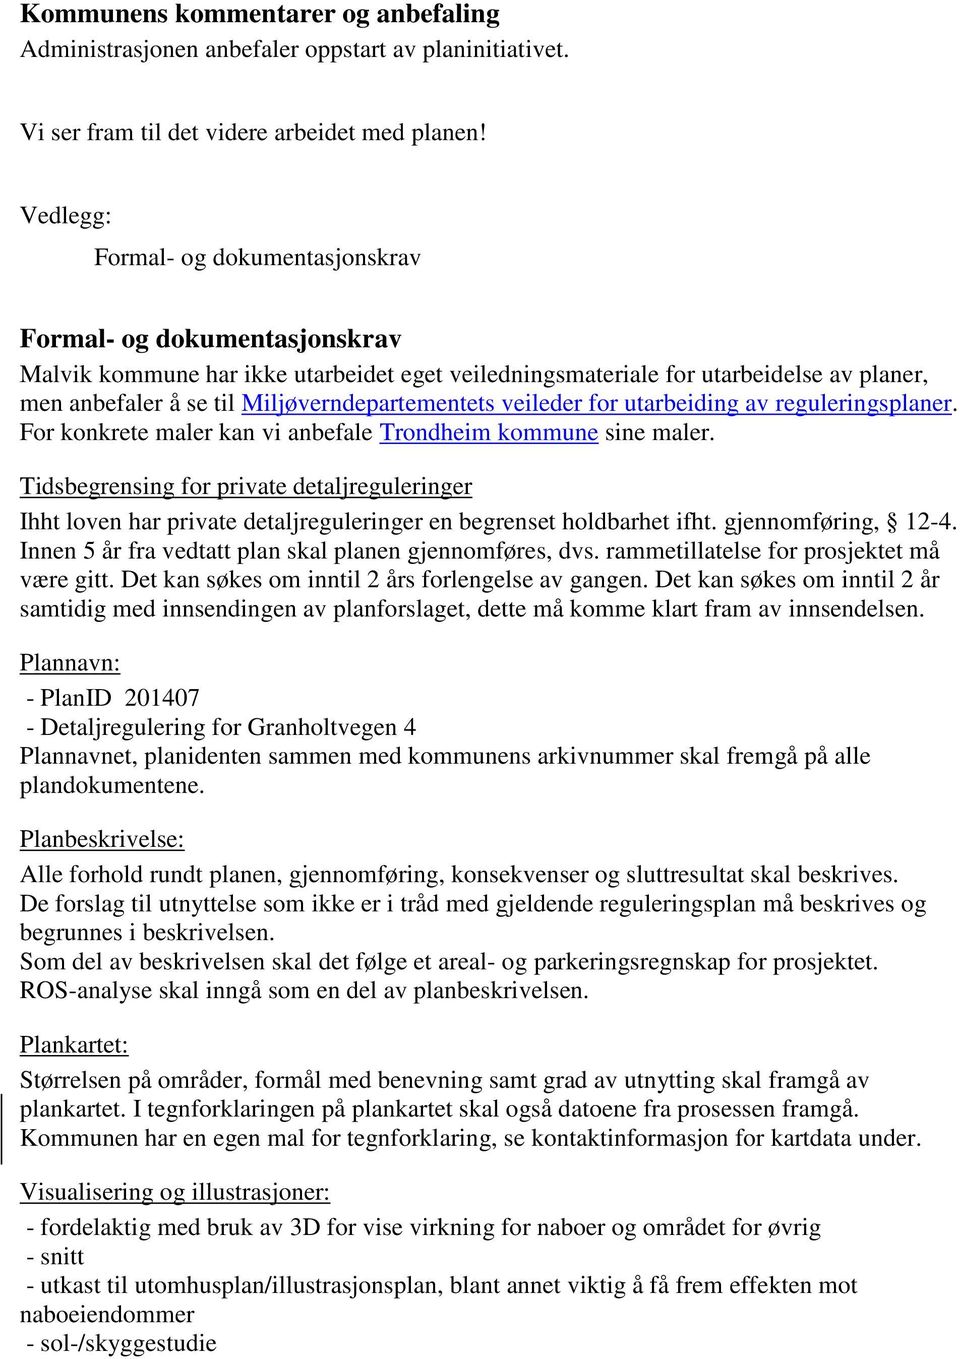 Miljøverndepartementets veileder for utarbeiding av reguleringsplaner. For konkrete maler kan vi anbefale Trondheim kommune sine maler.